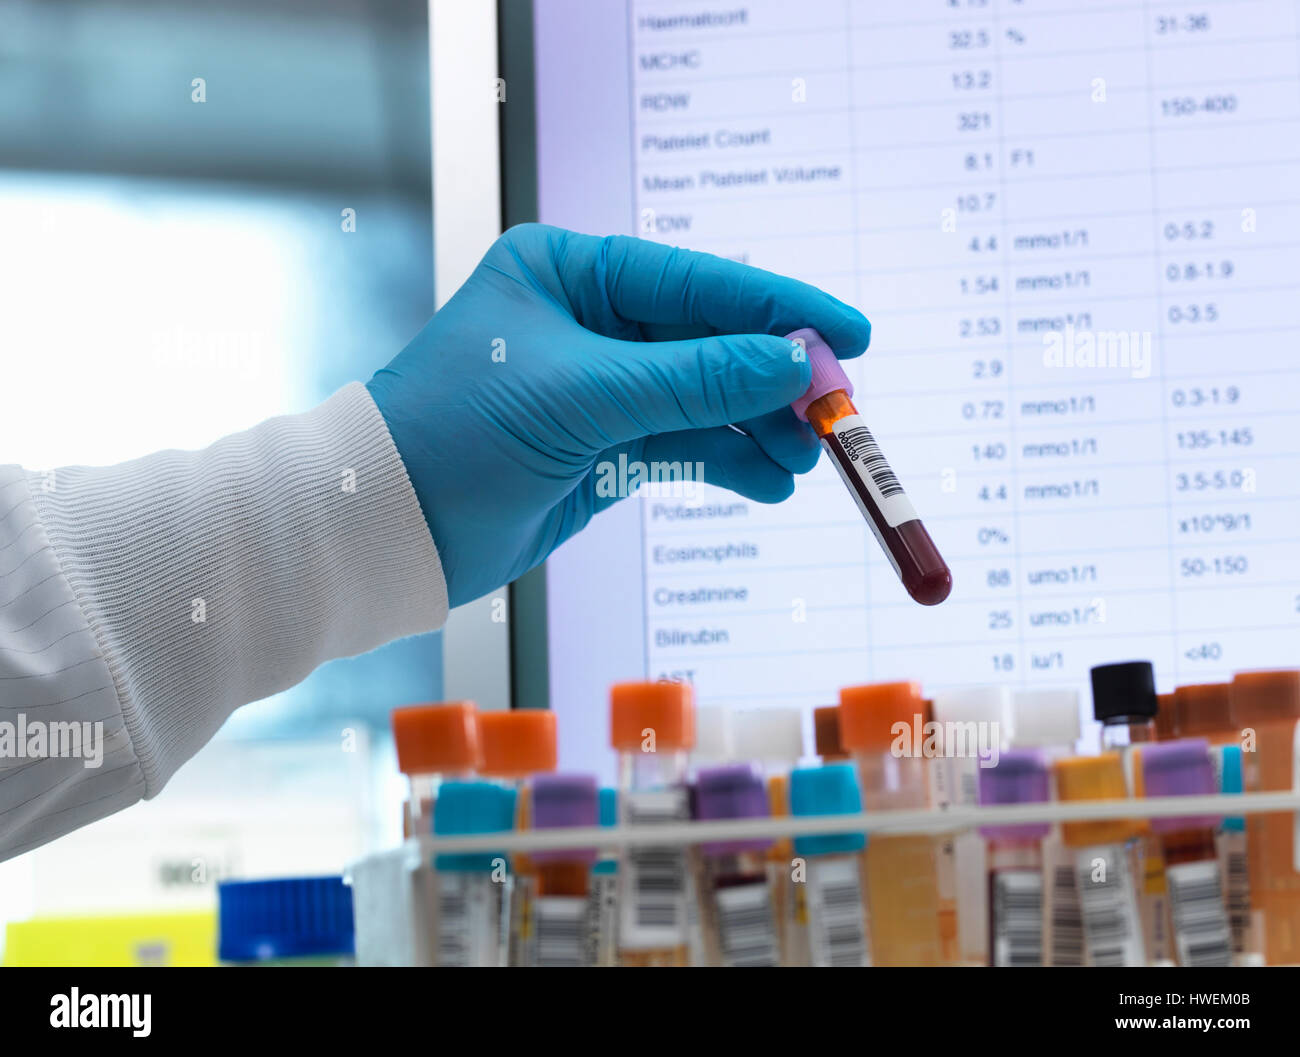 Blutanalyse, Hämatologen Vorbereitung medizinische Proben, einschließlich des Blutes mit Ergebnissen auf dem Computerbildschirm zu Testzwecken Stockfoto